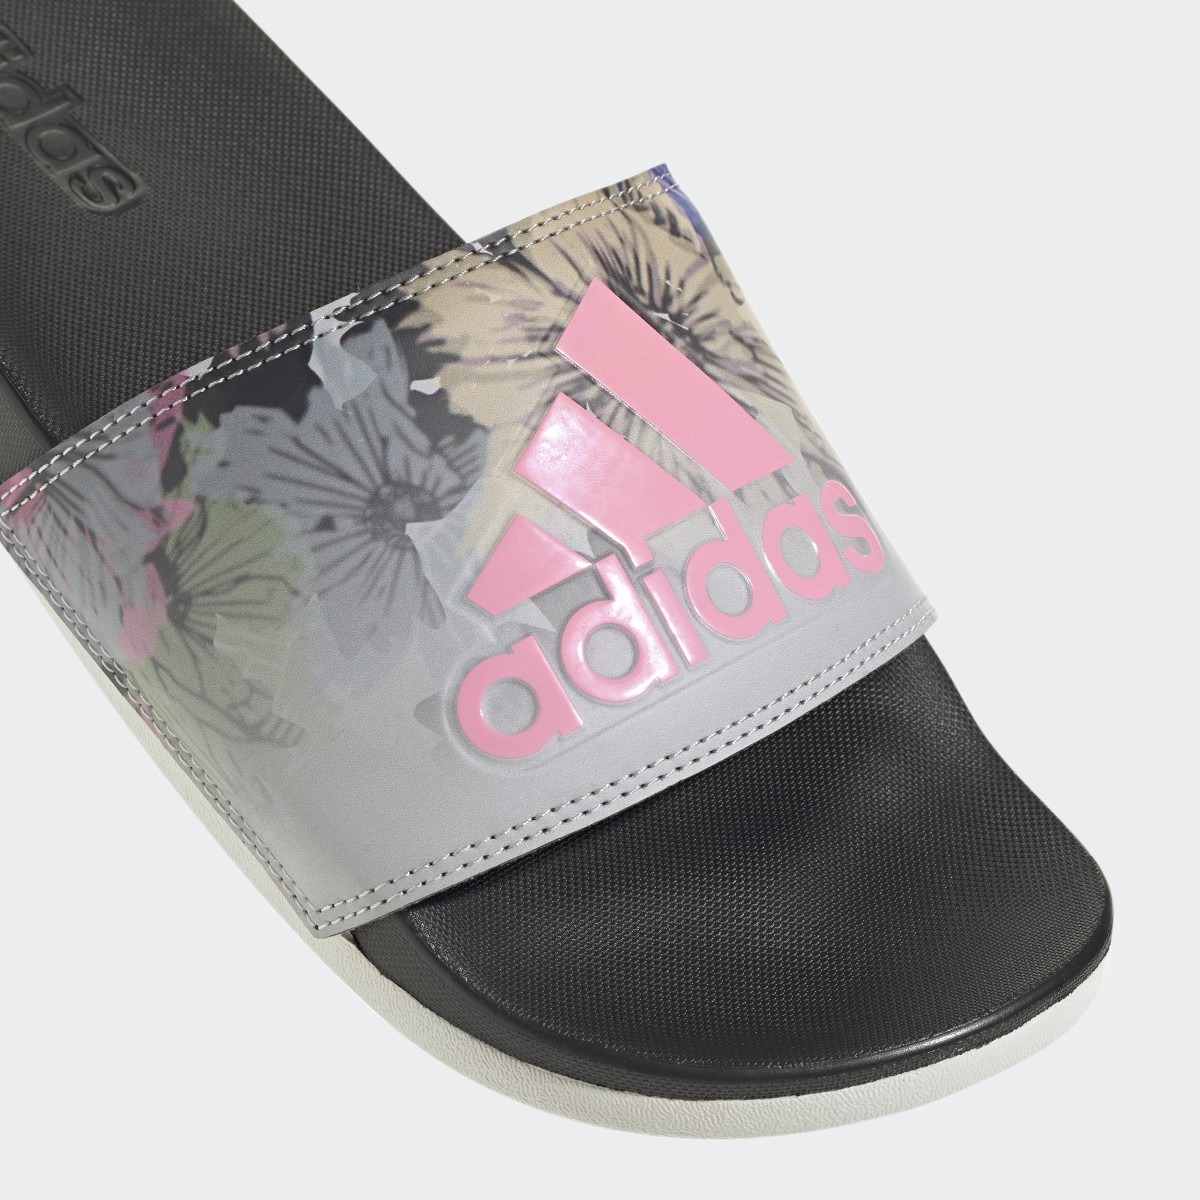 Adidas Sandalias adilette Comfort. 9